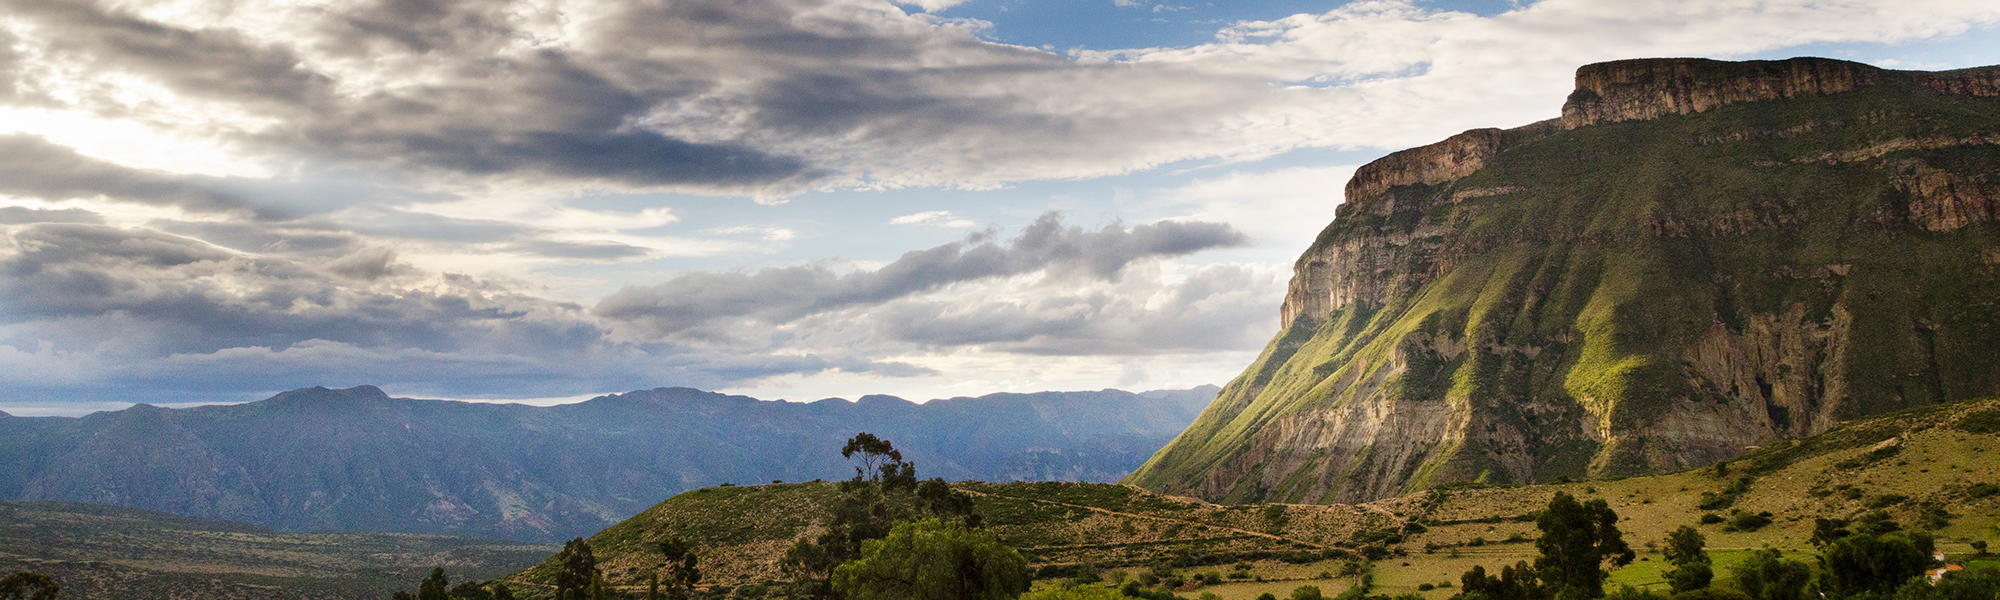 Fjell og dal i åpent landskap i Bolivia